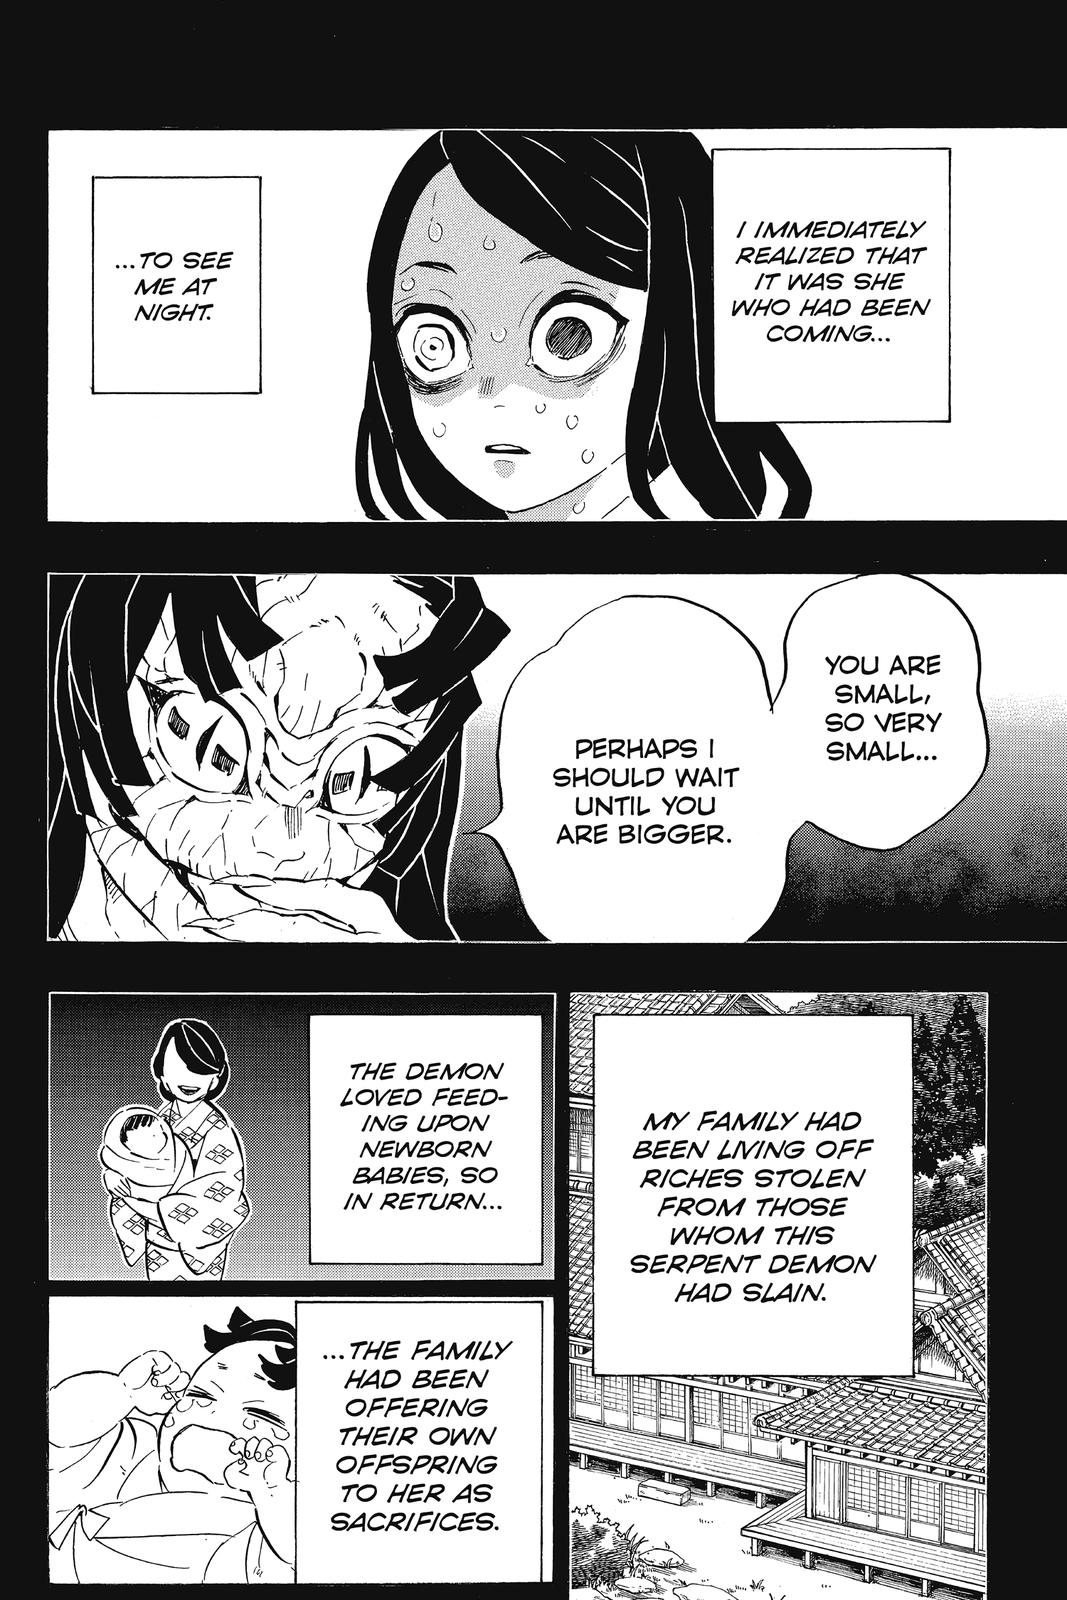 Demon Slayer Manga Manga Chapter - 188 - image 19